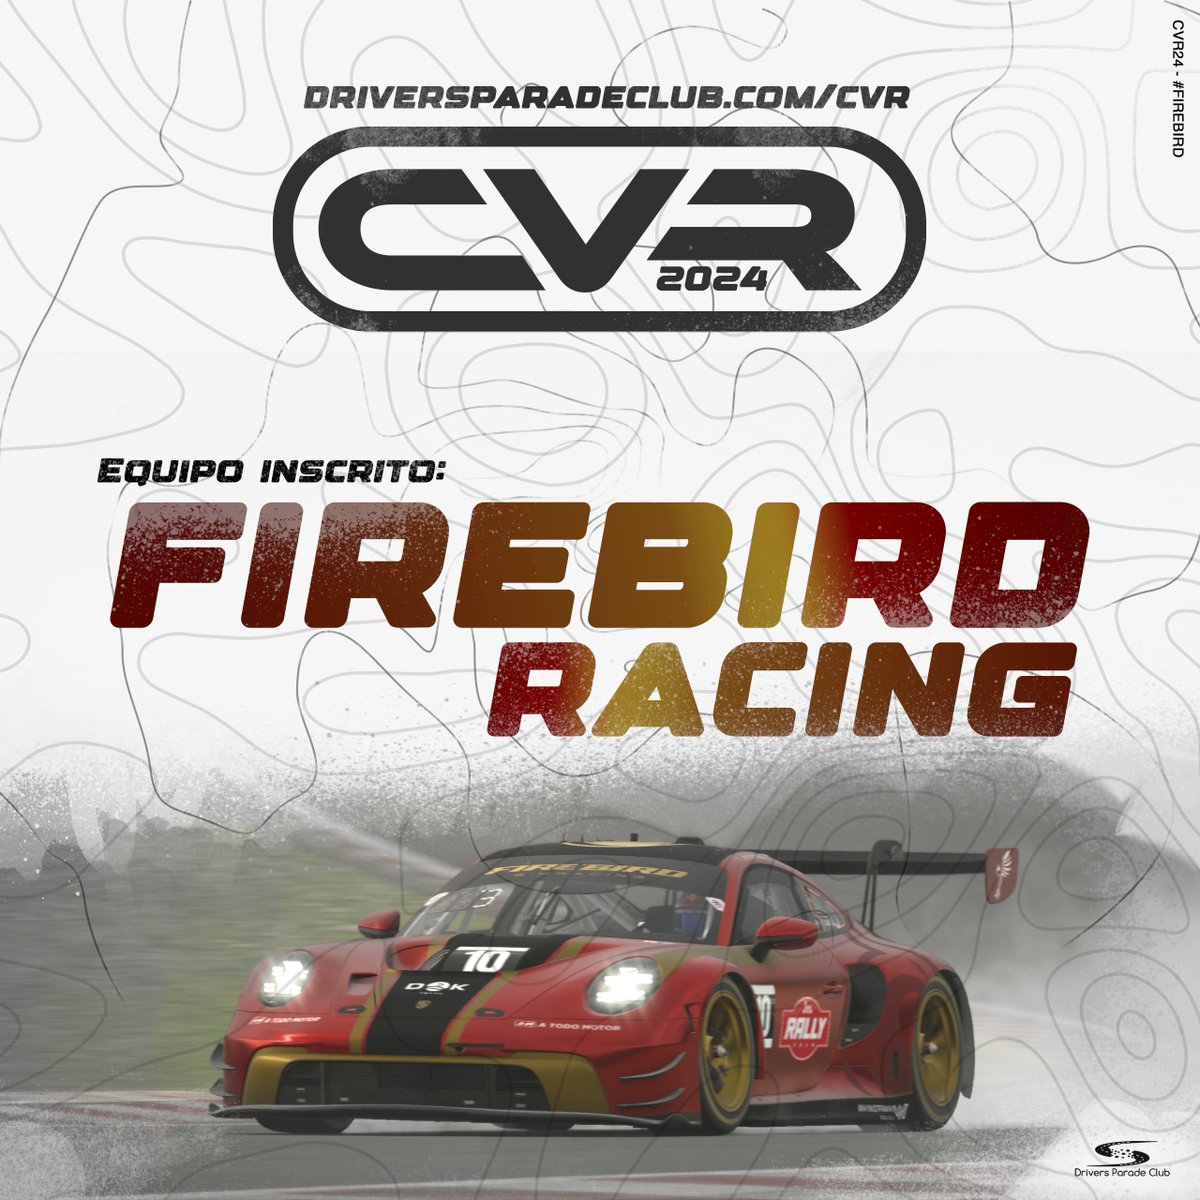 Damos la bienvenida en #CVR24 a @firebird_team! Gracias por vuestra presencia y apoyo a este campeonato de resistencia. - Preinscripción en driversparadeclub.com/CVR